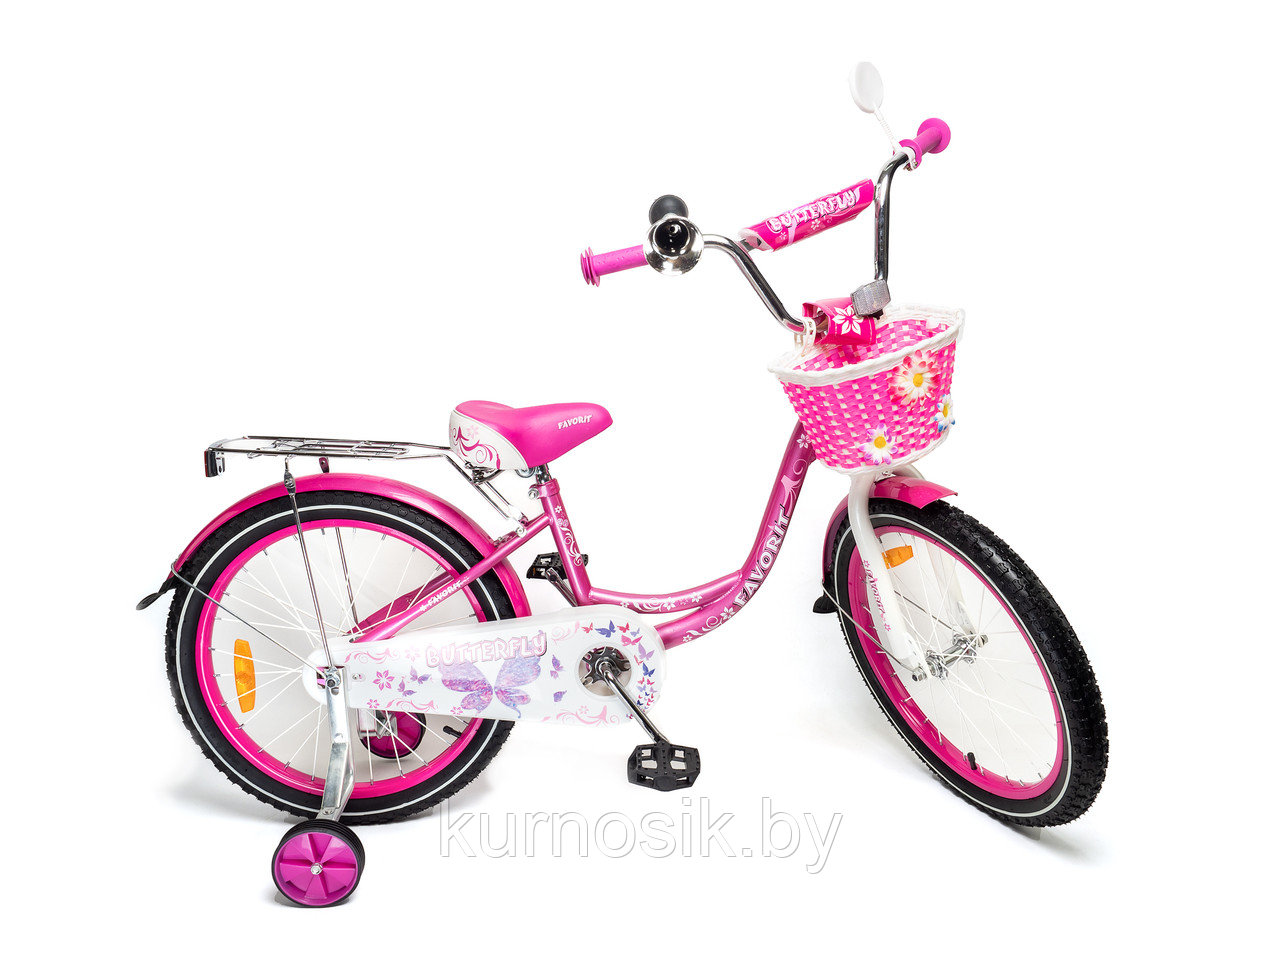 Детский двухколесный велосипед Favorit Butterfly 18" (5-8 лет) розовый, фото 1